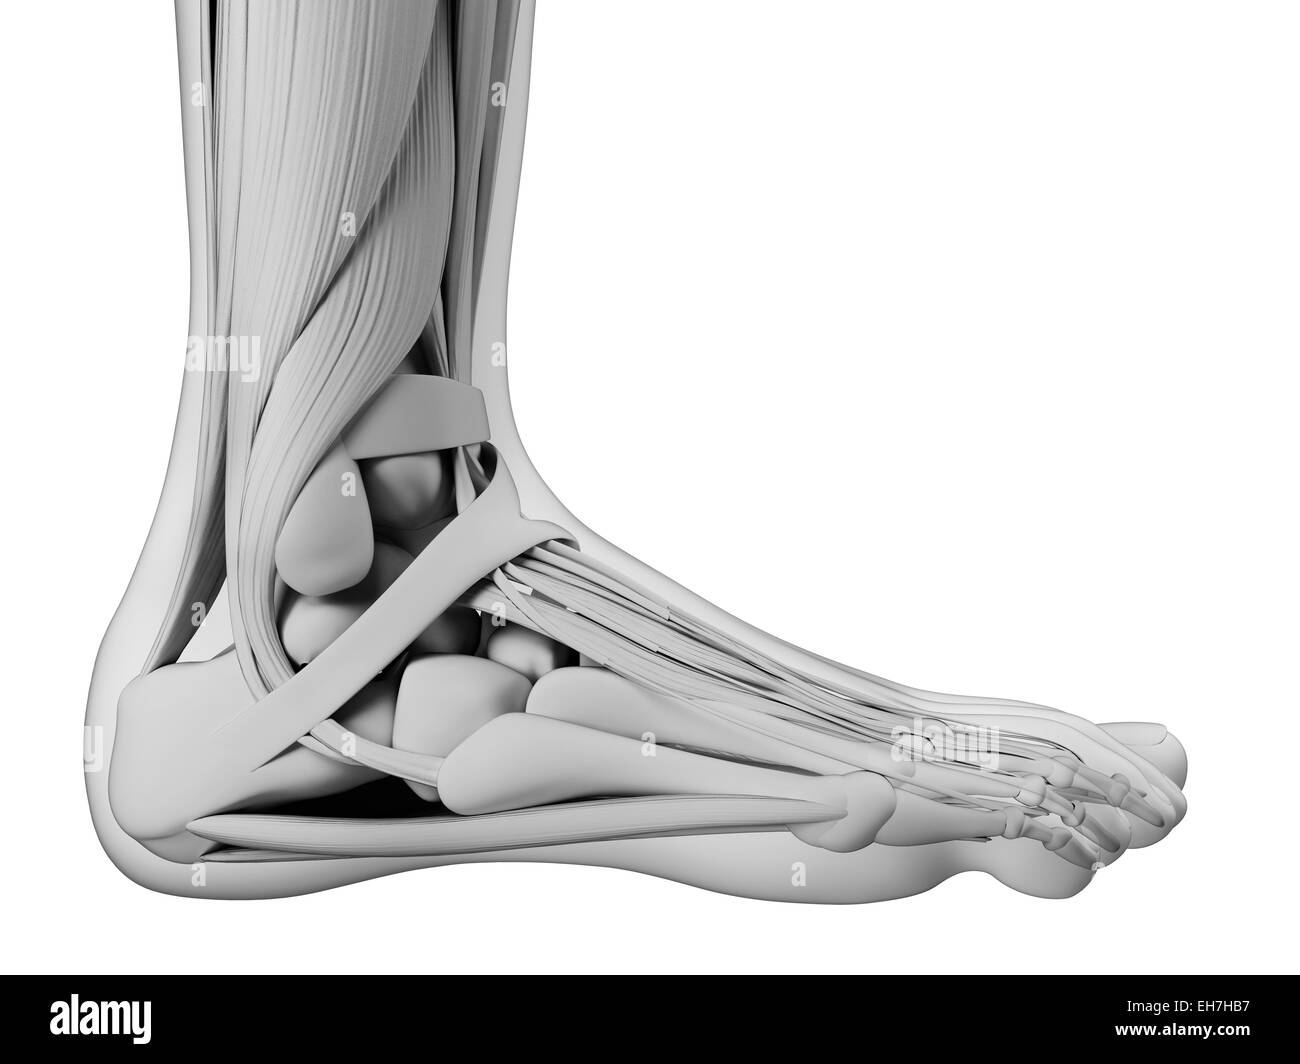 Human foot anatomy, illustration Stock Photo